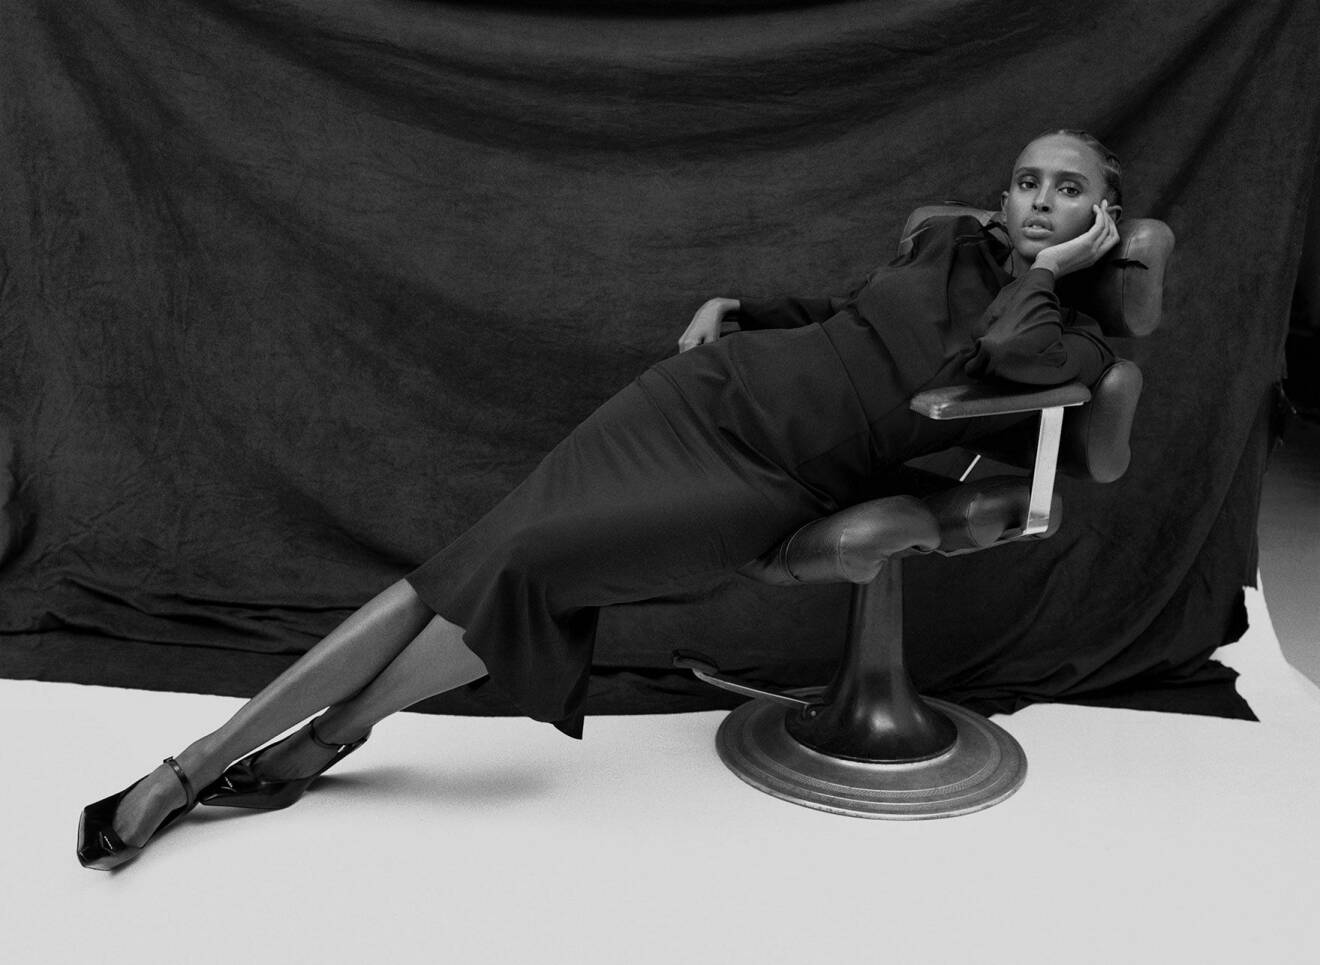 Fotomodellen halvligger ner i en stol och har på sig en svart klänning och svarta skor, allt från Prada.